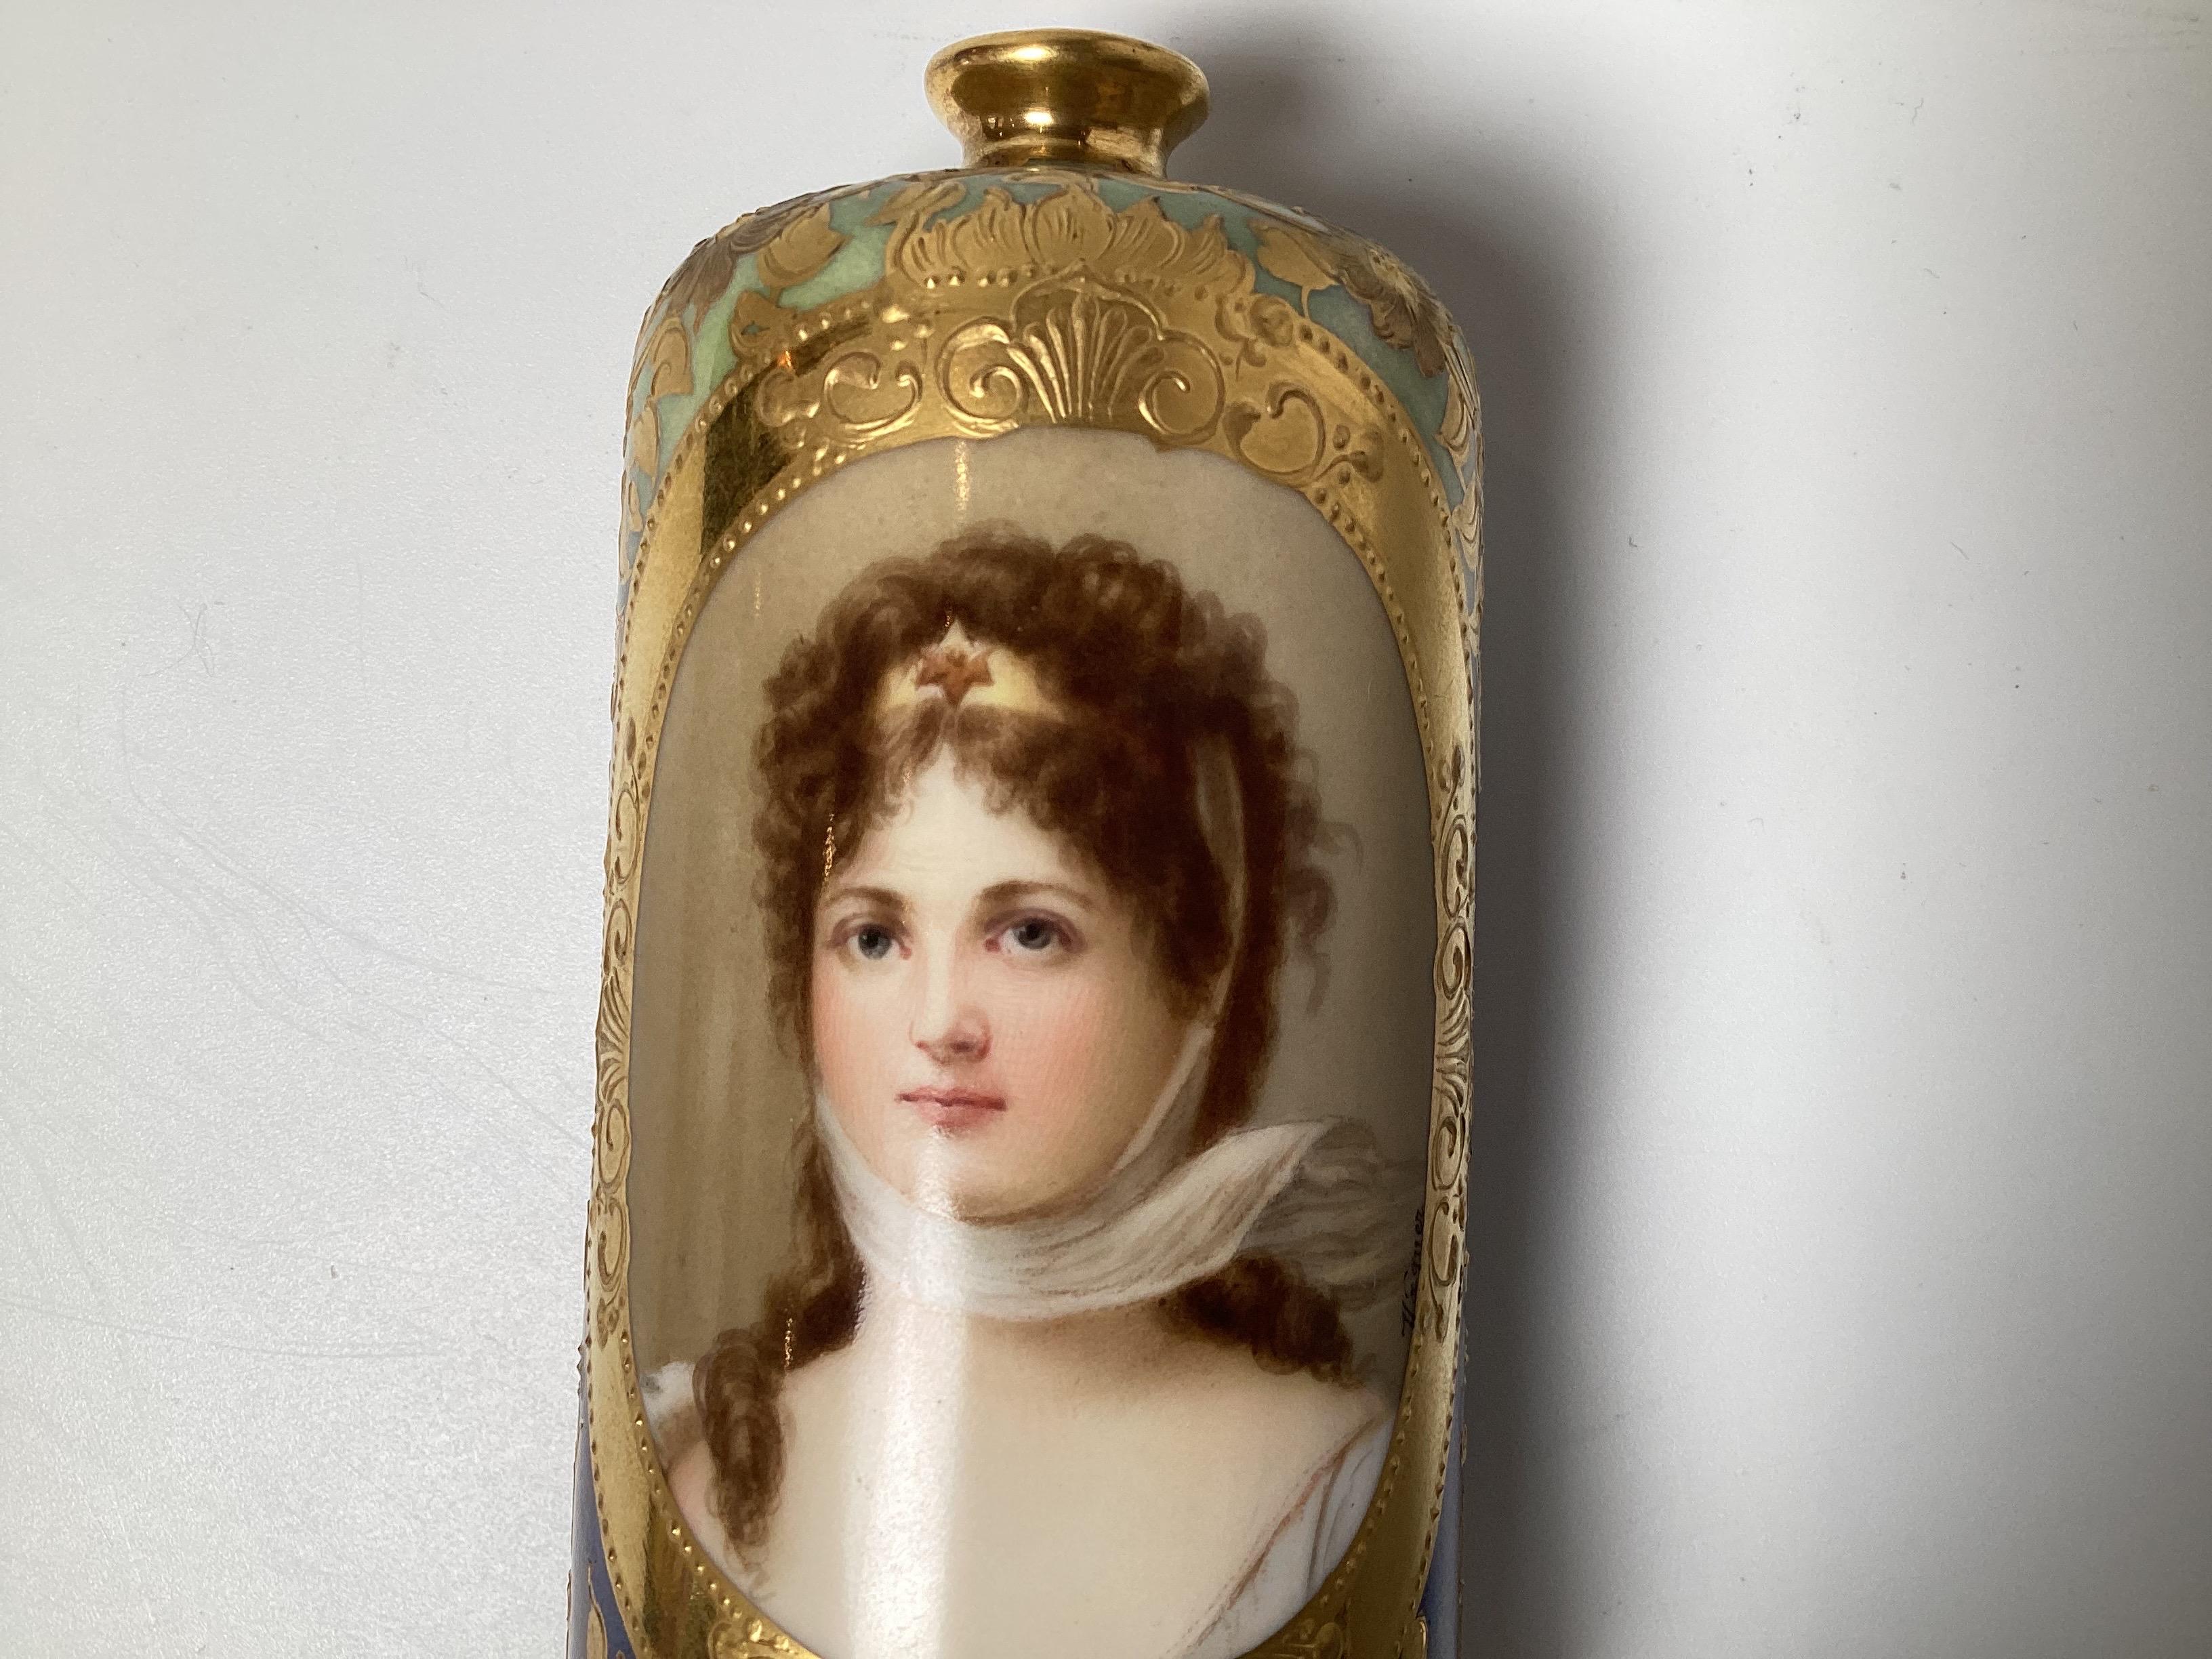 Un petit vase de cabinet peint de façon experte avec un portrait peint à la main de la Reine Louise, signé Wagner.  Le fond bleu irisé avec une décoration en relief dorée à la main avec des tournesols, 5,25 pouces de hauteur, Autriche, Circa 1900